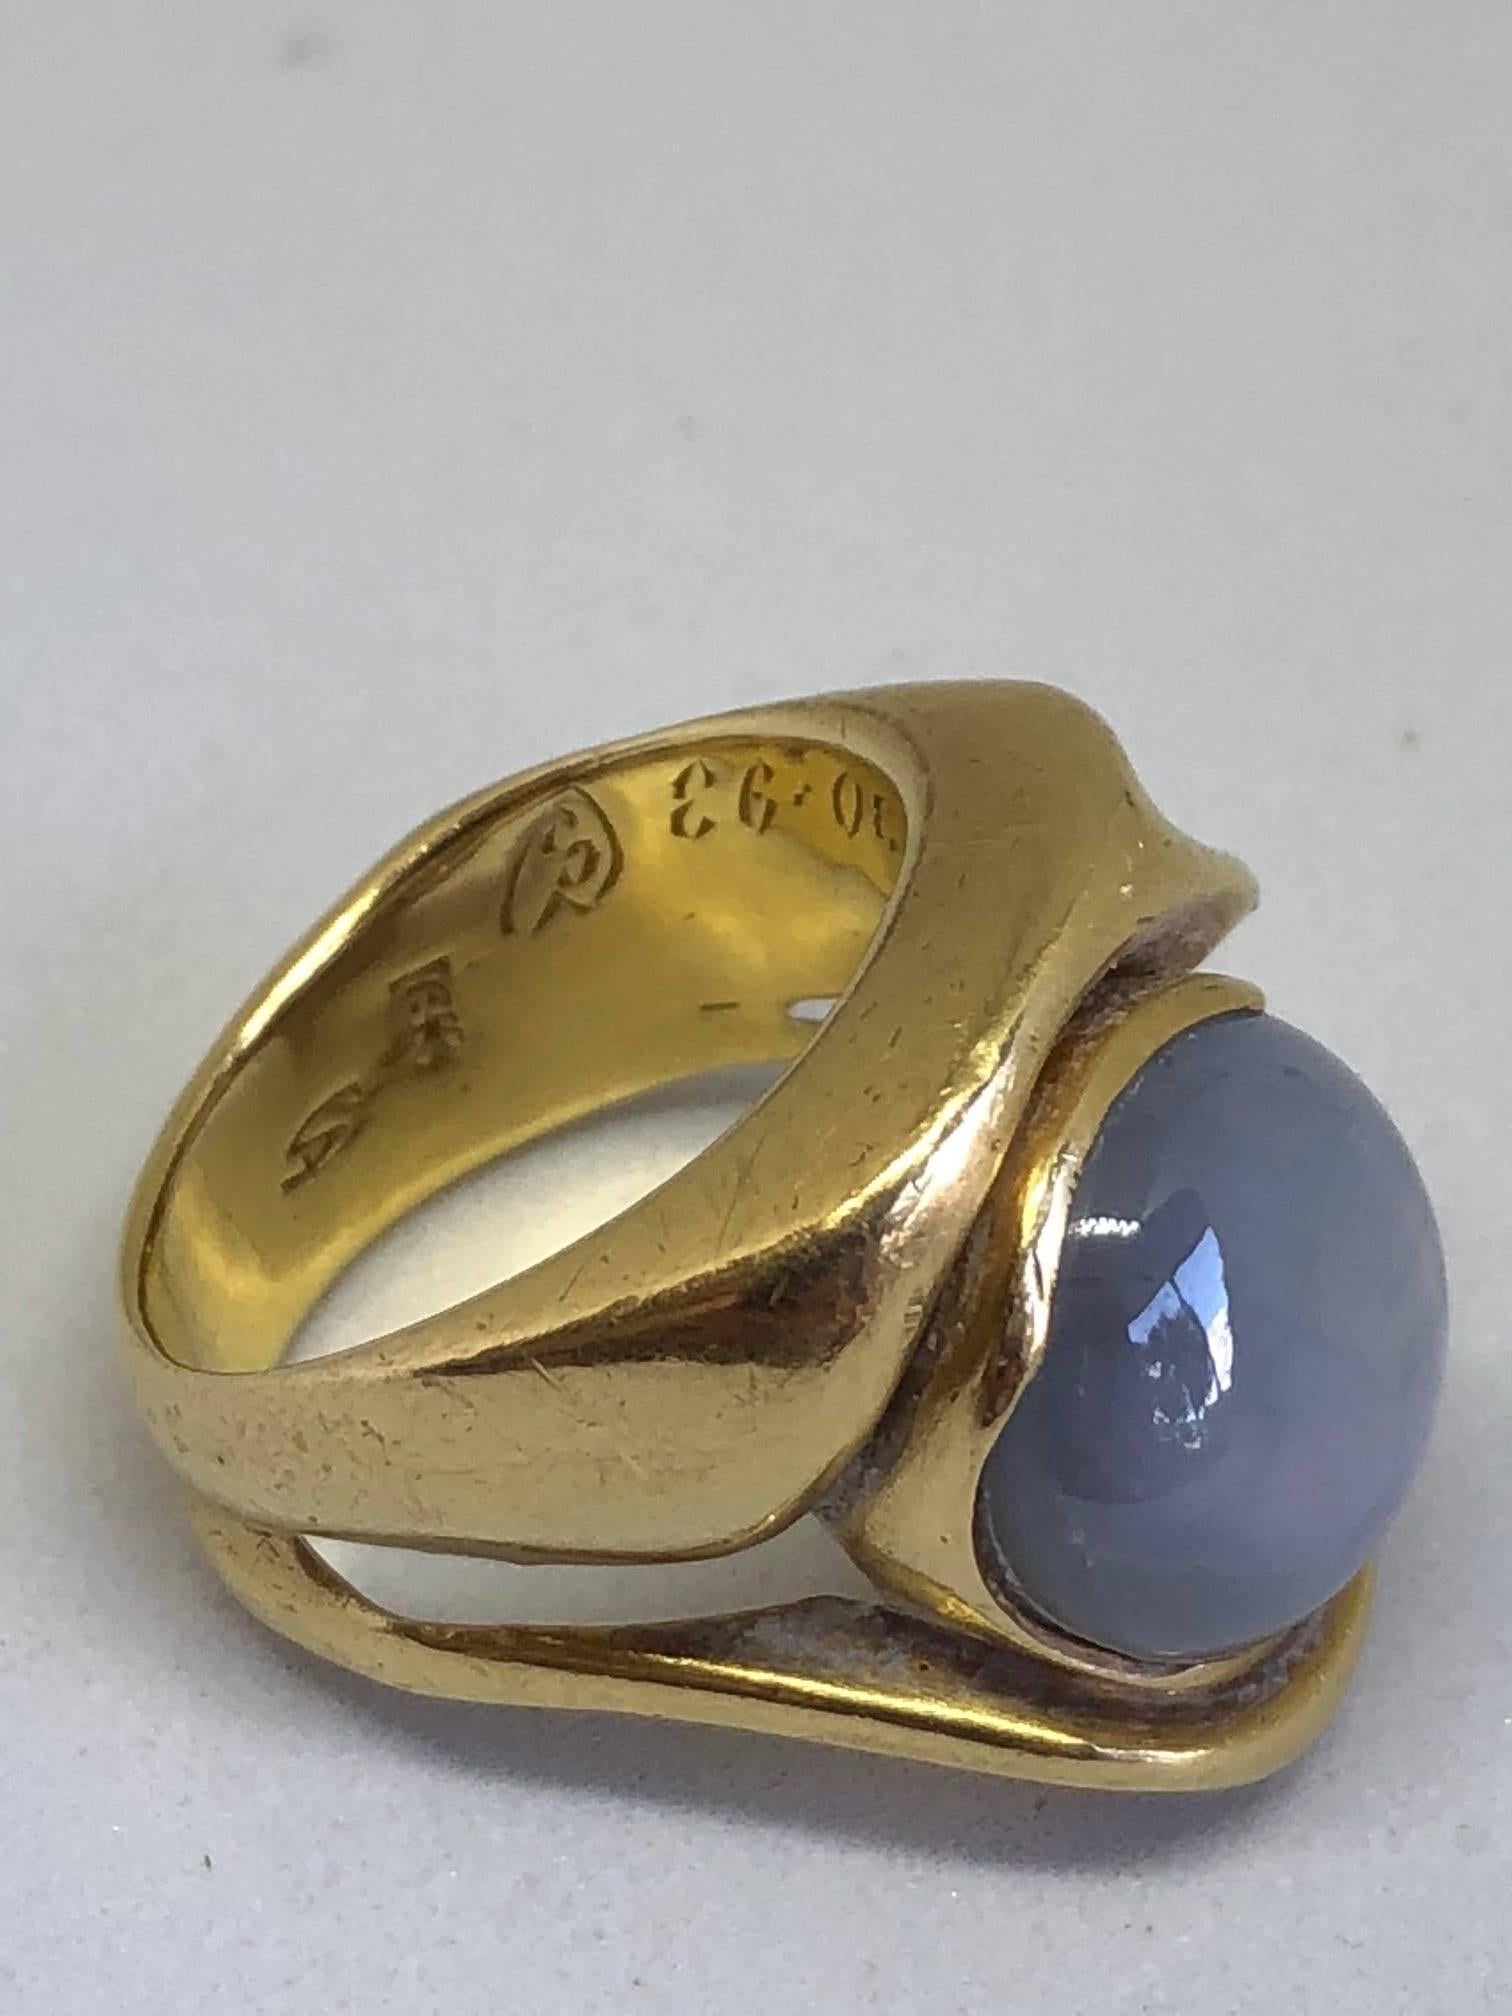 18karat Handsome,rare 22.5 carat “star” sapphire.
Star sapphire measures 15 x 13 mm
Ring measures 20 mm x 18 mm
Handsome Solid 18 karat gold


